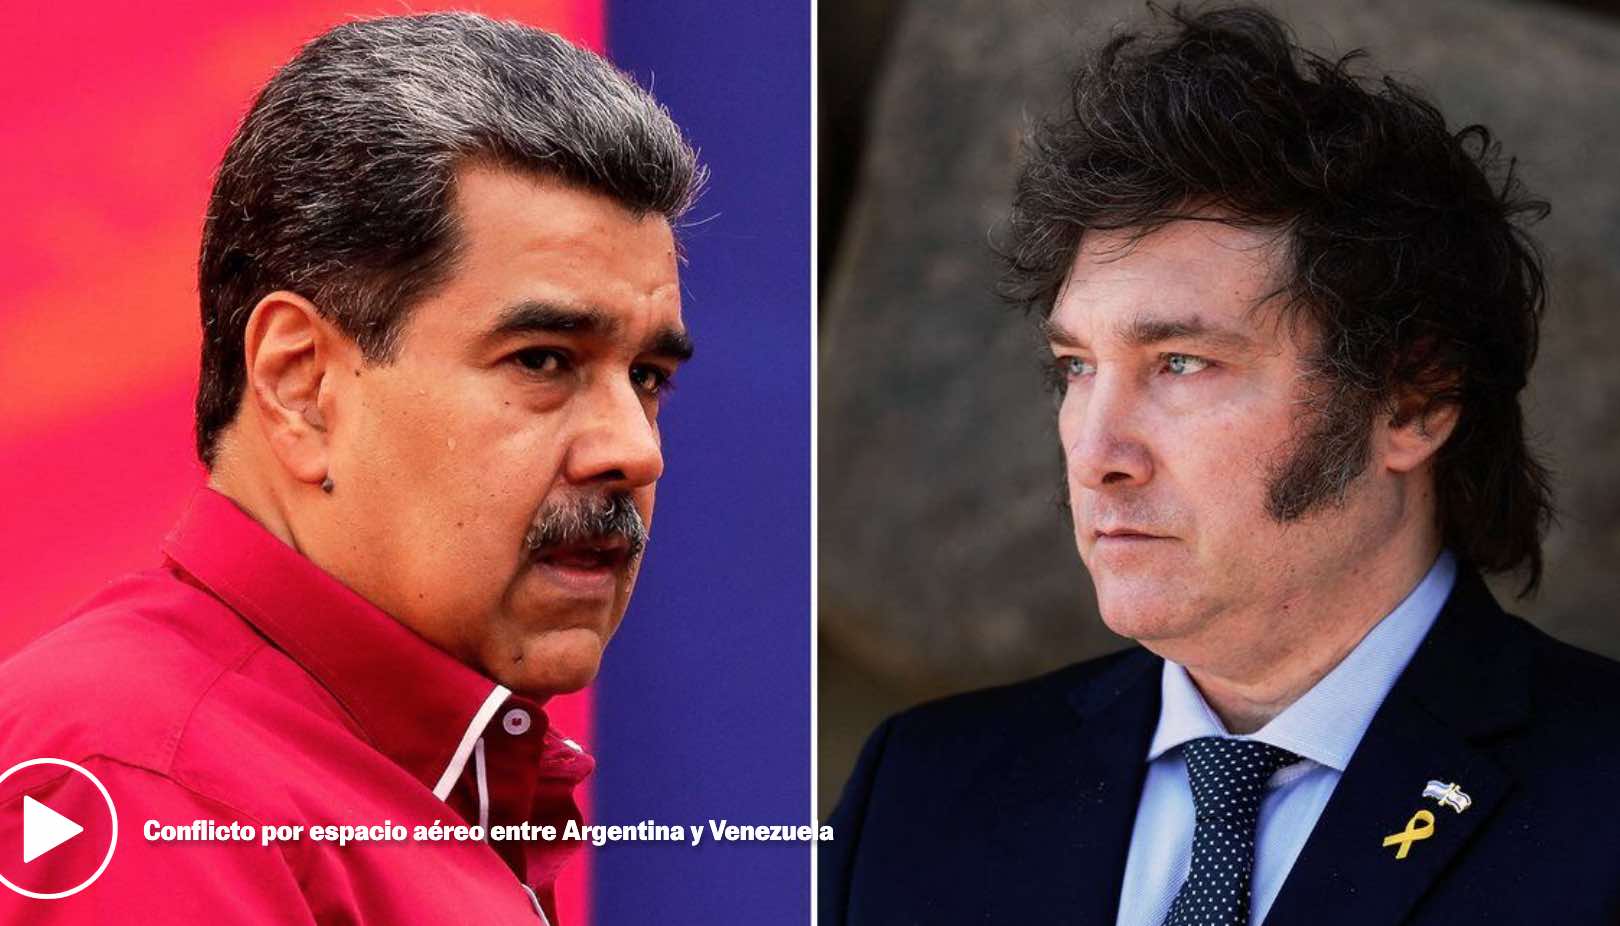 Argentina y Venezuela: disputa en altamar